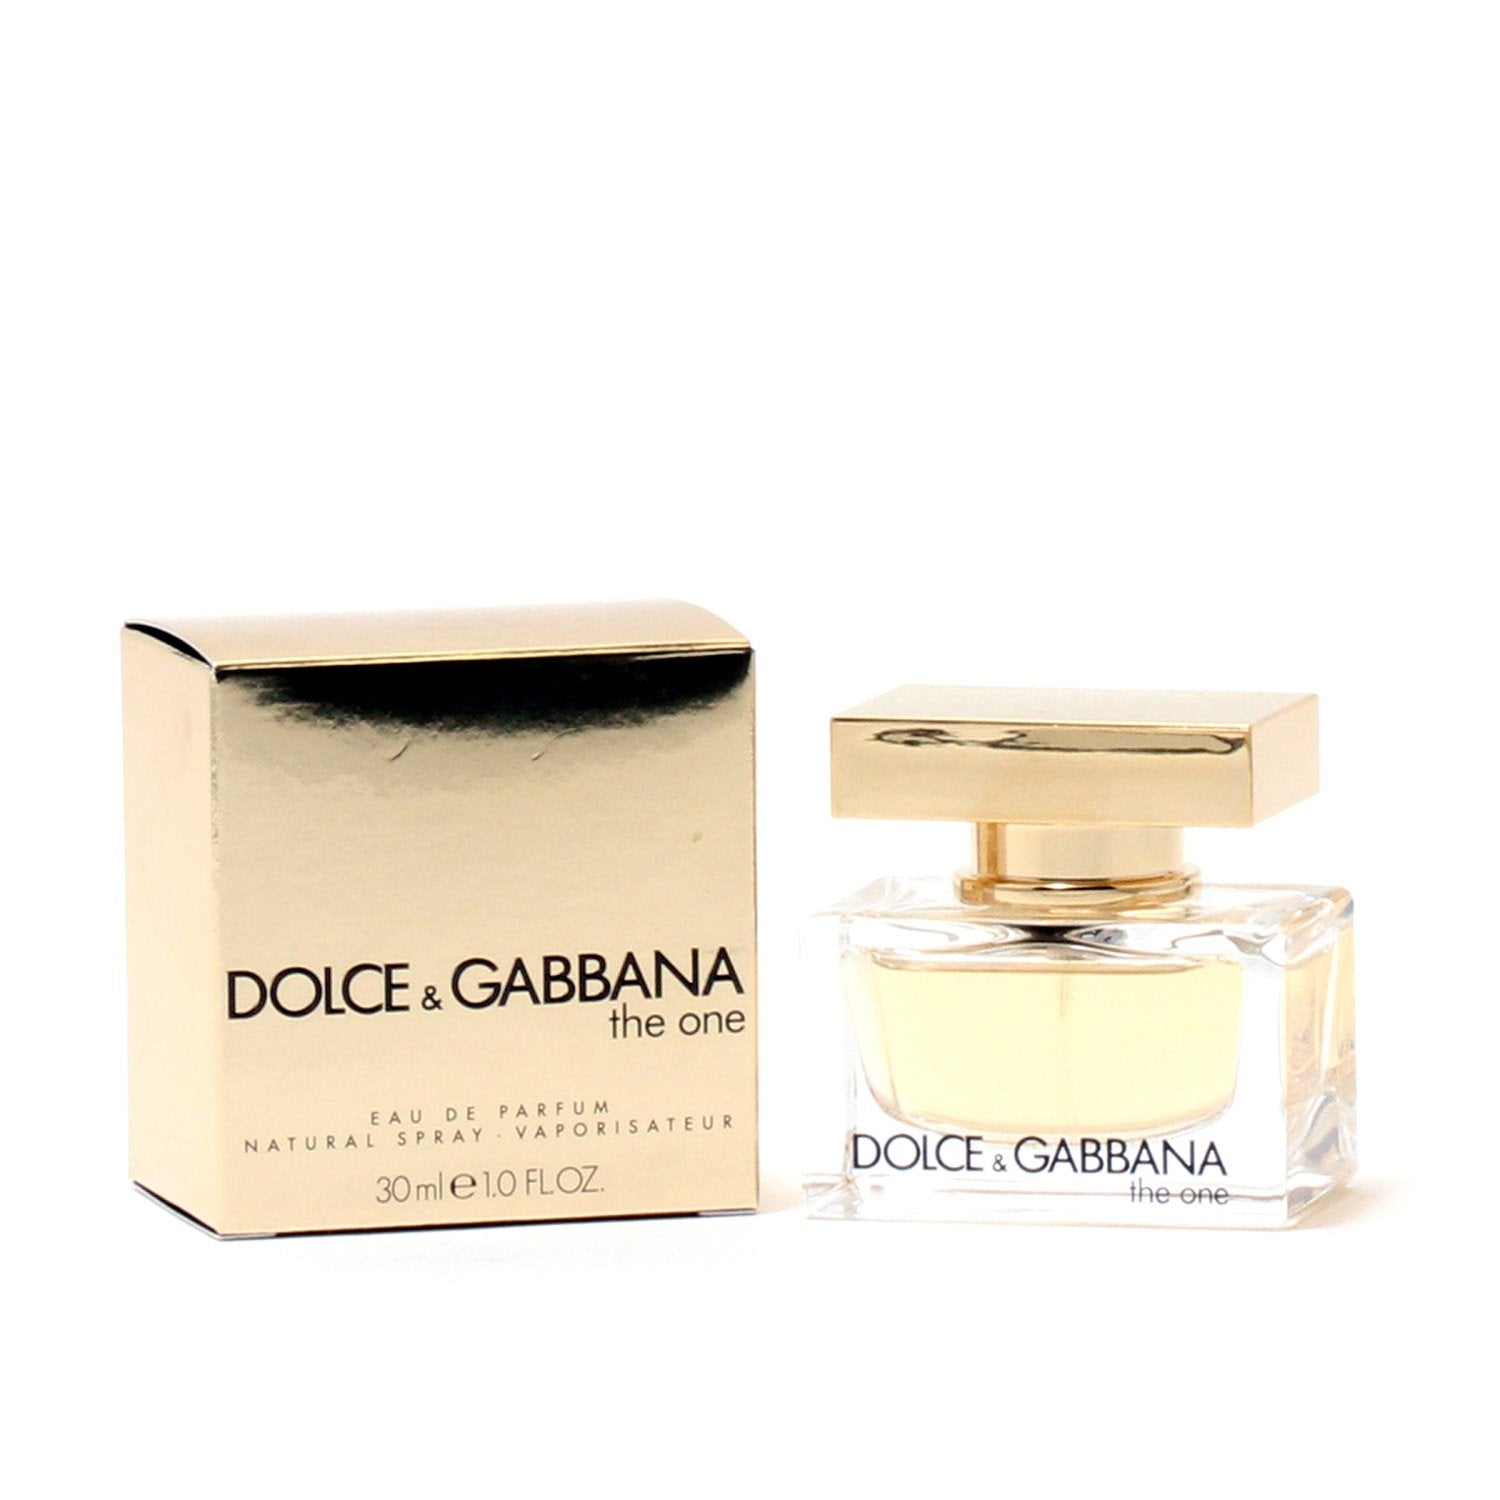 Dolce & Gabbana Bellucci pumps - Pink